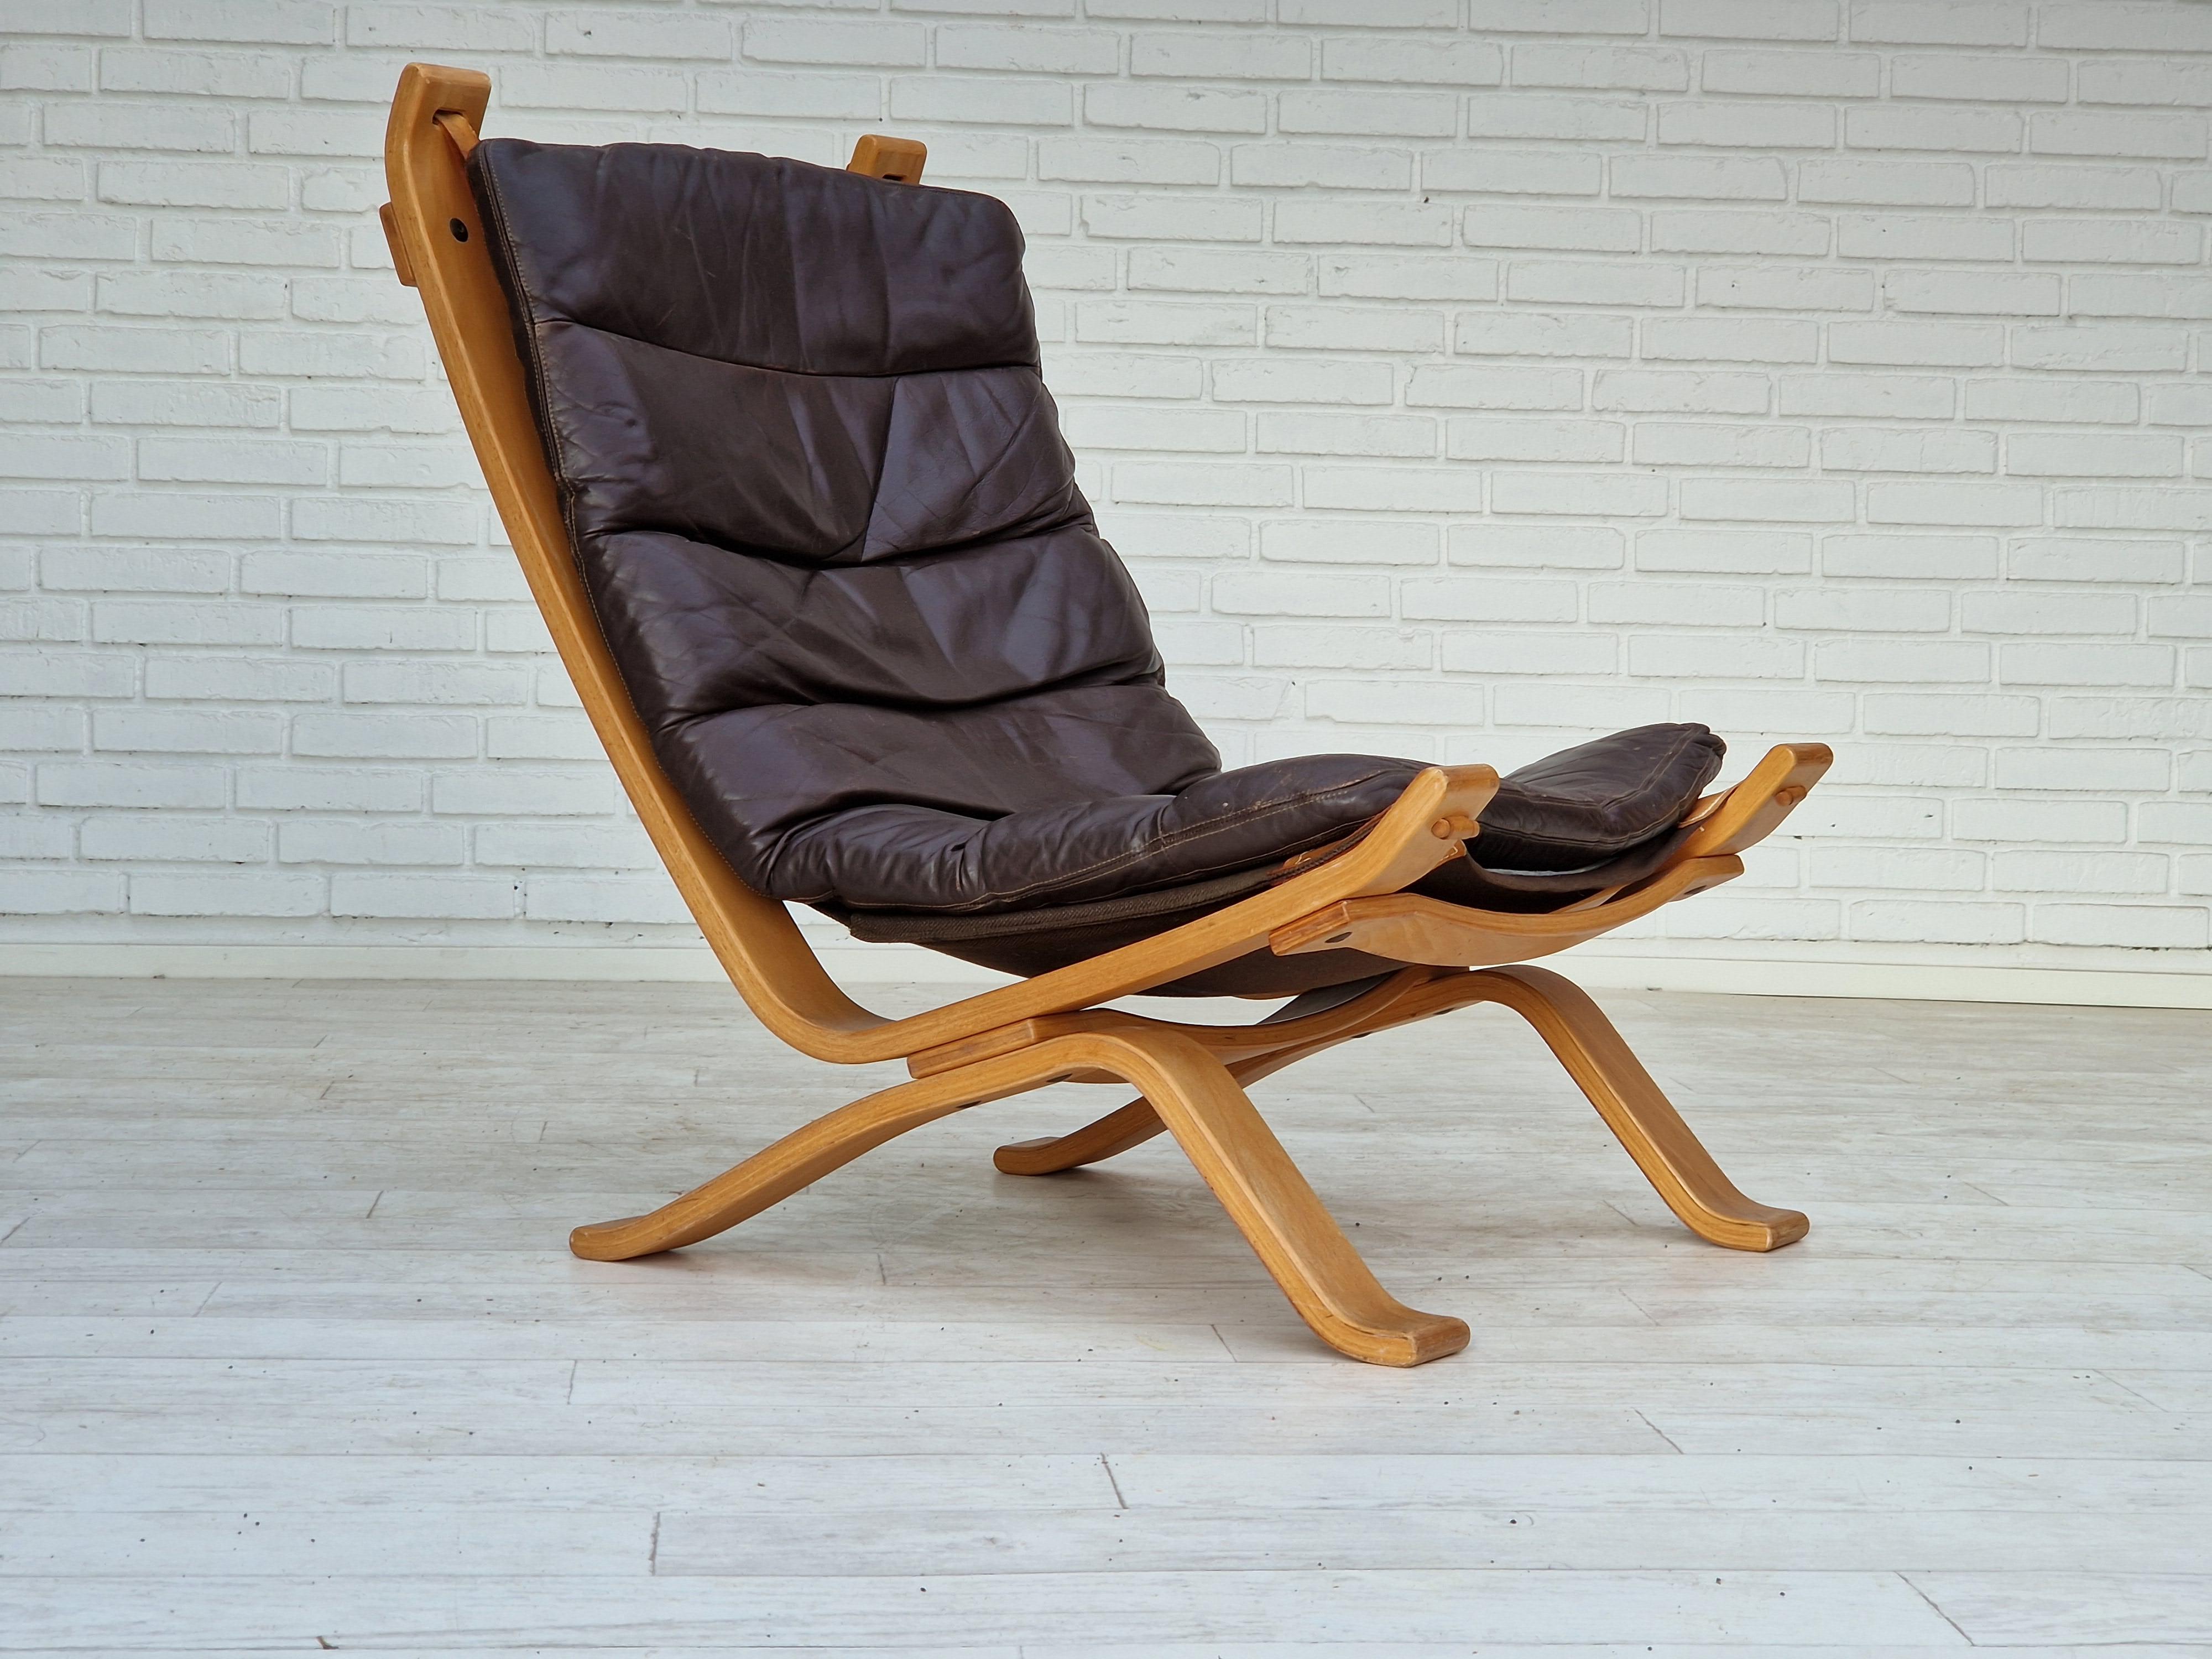 Années 1970, design danois de Bramin Møbler. Fauteuil en très bon état d'origine : pas d'odeur ni de tache. Cuir brun, contreplaqué plié, toile. Coussin amovible. Fabriqué par le fabricant de meubles danois Bramin Møbler vers 1970.
